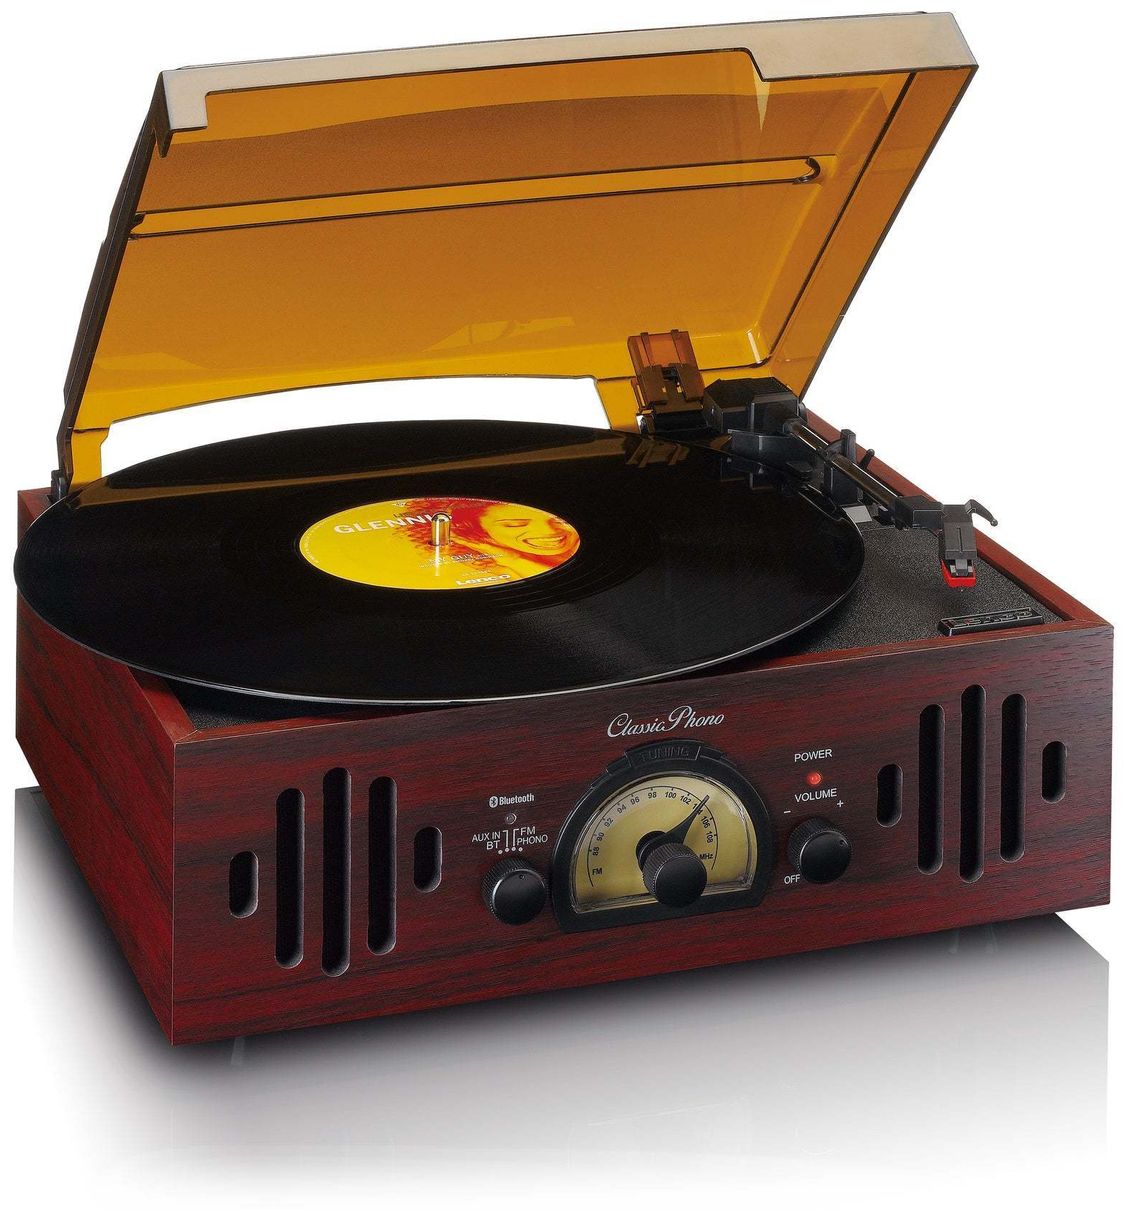 TT-43WA Classic Phono Audio-Plattenspieler mit Riemenantrieb 